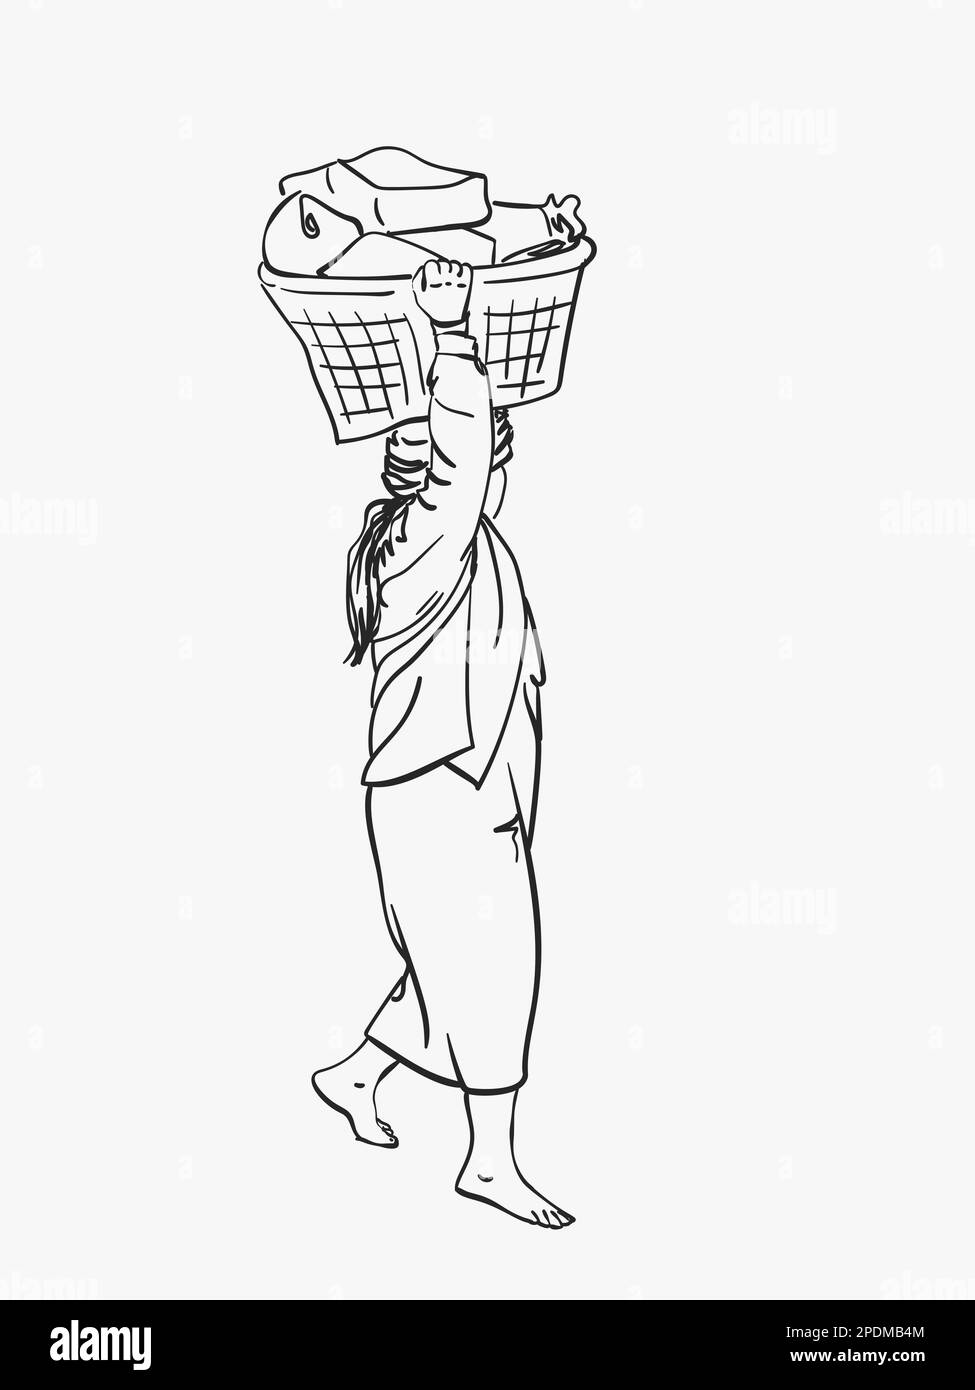 La femme birmane de Longyi porte un grand panier sur sa tête, un croquis vectoriel, une illustration linéaire dessinée à la main Illustration de Vecteur